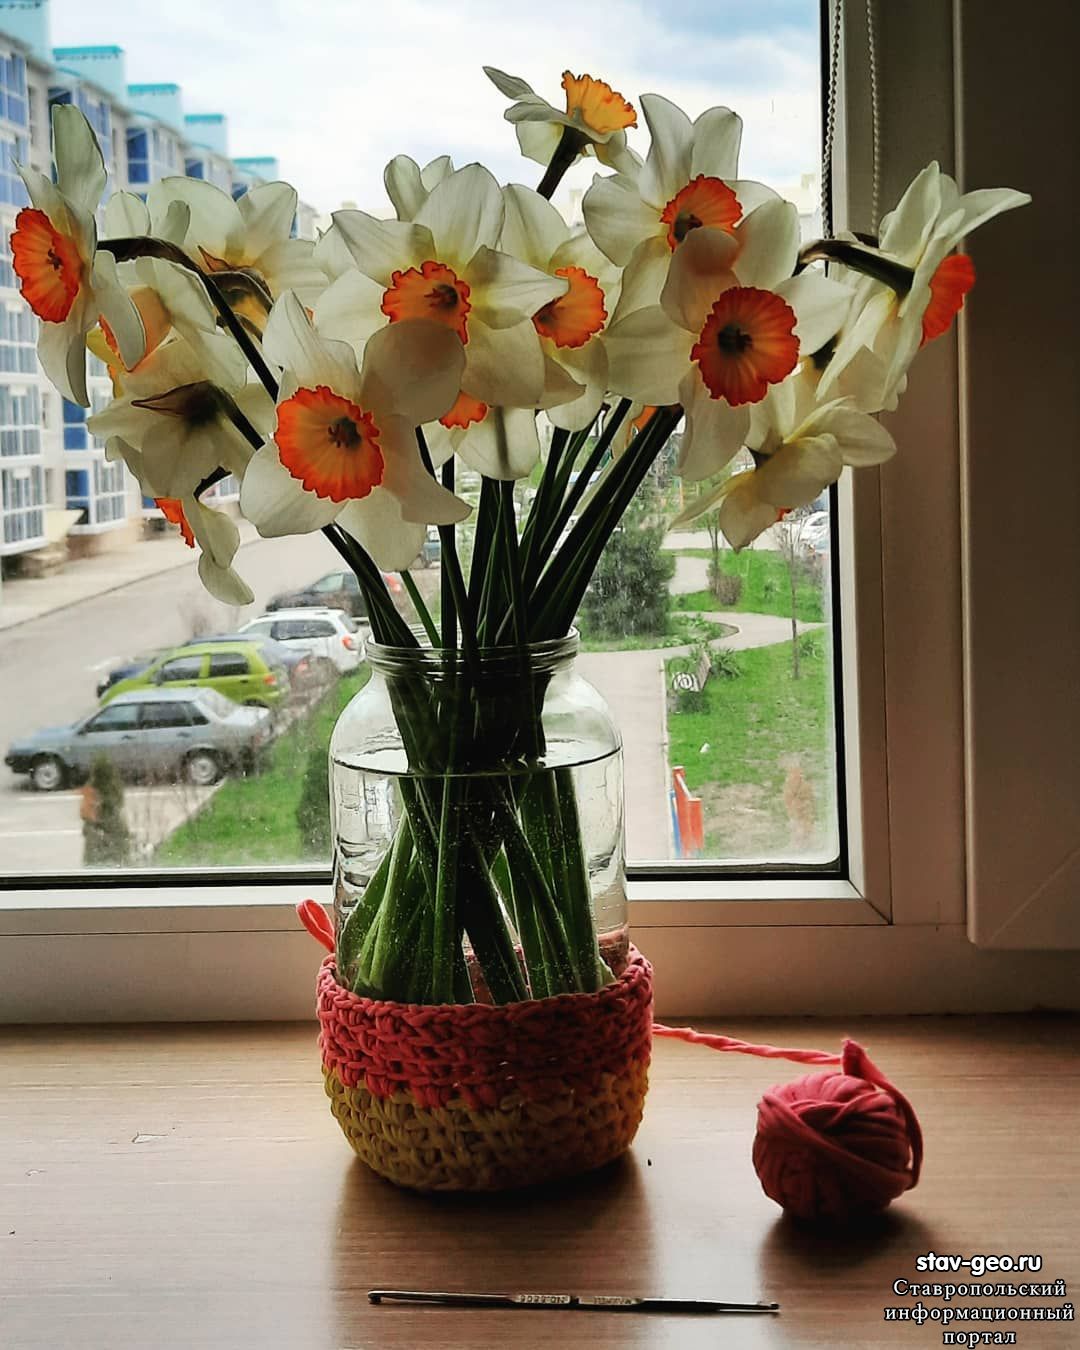 А из нашего окна... весна уж нынче за окном... 24 апреля 2021